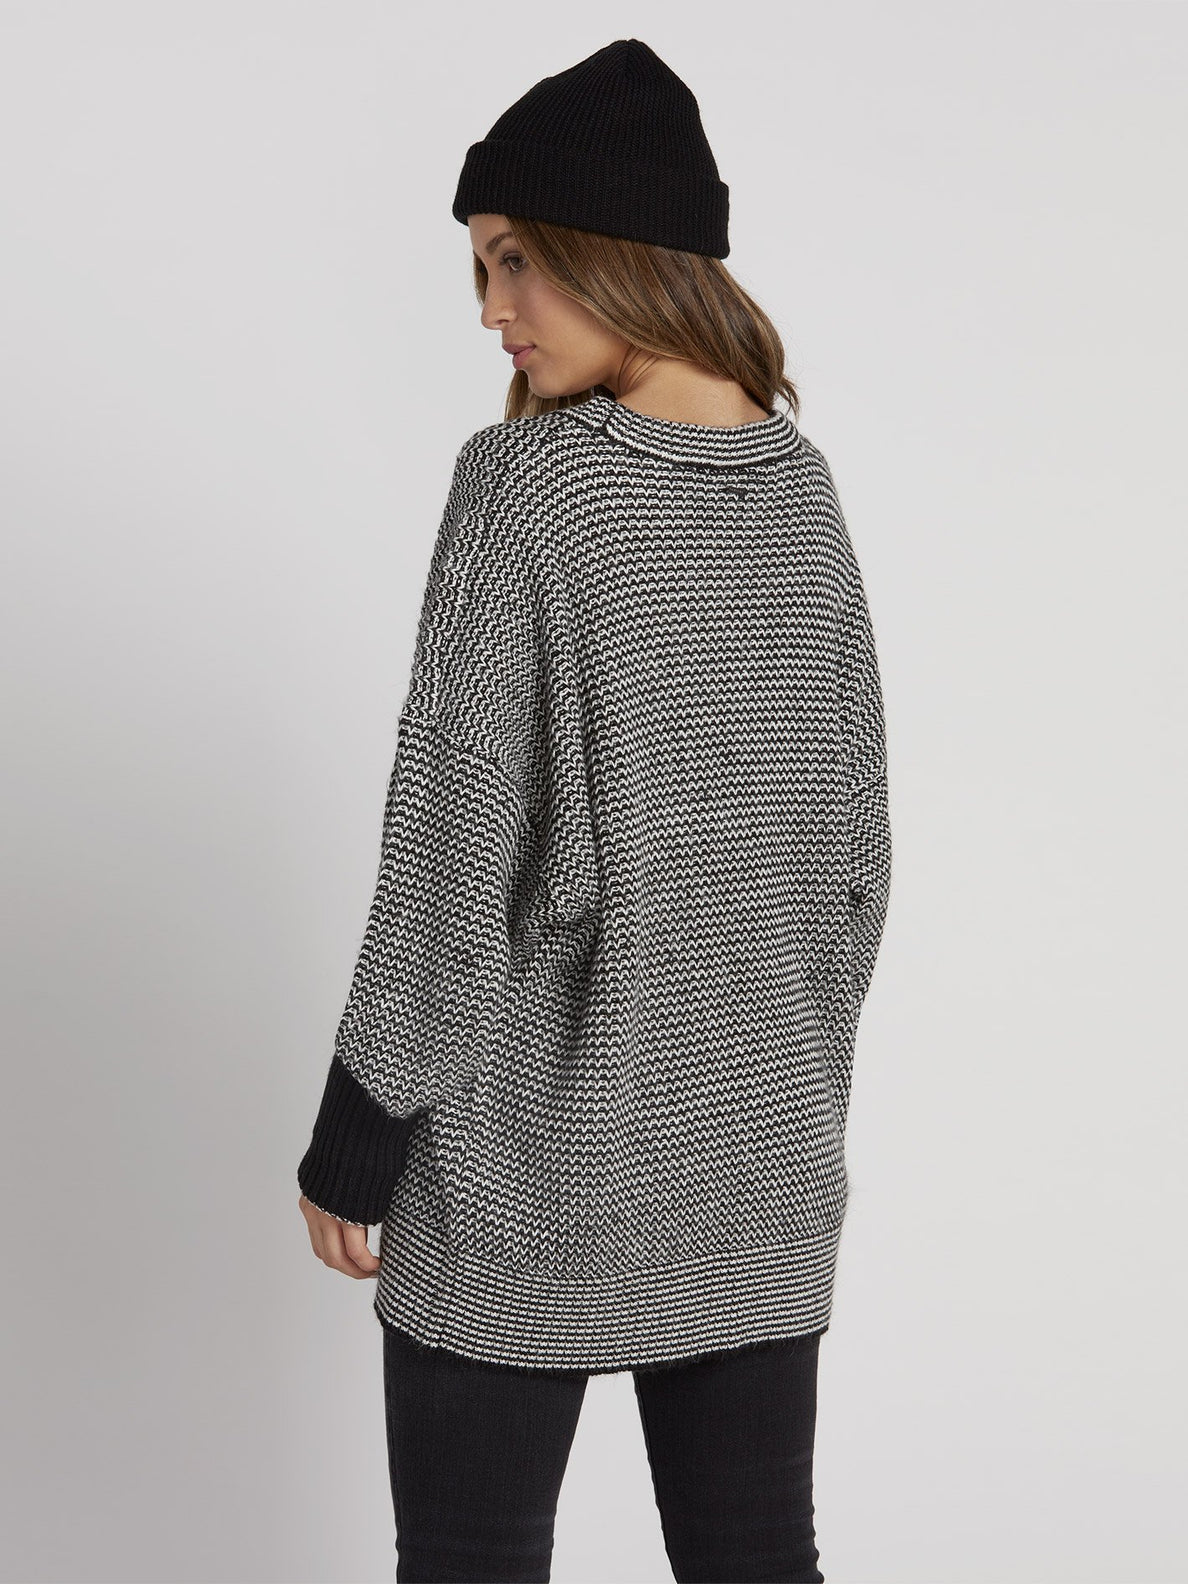 Stormstone Sweater - Black (B0731951_BLK) [B]